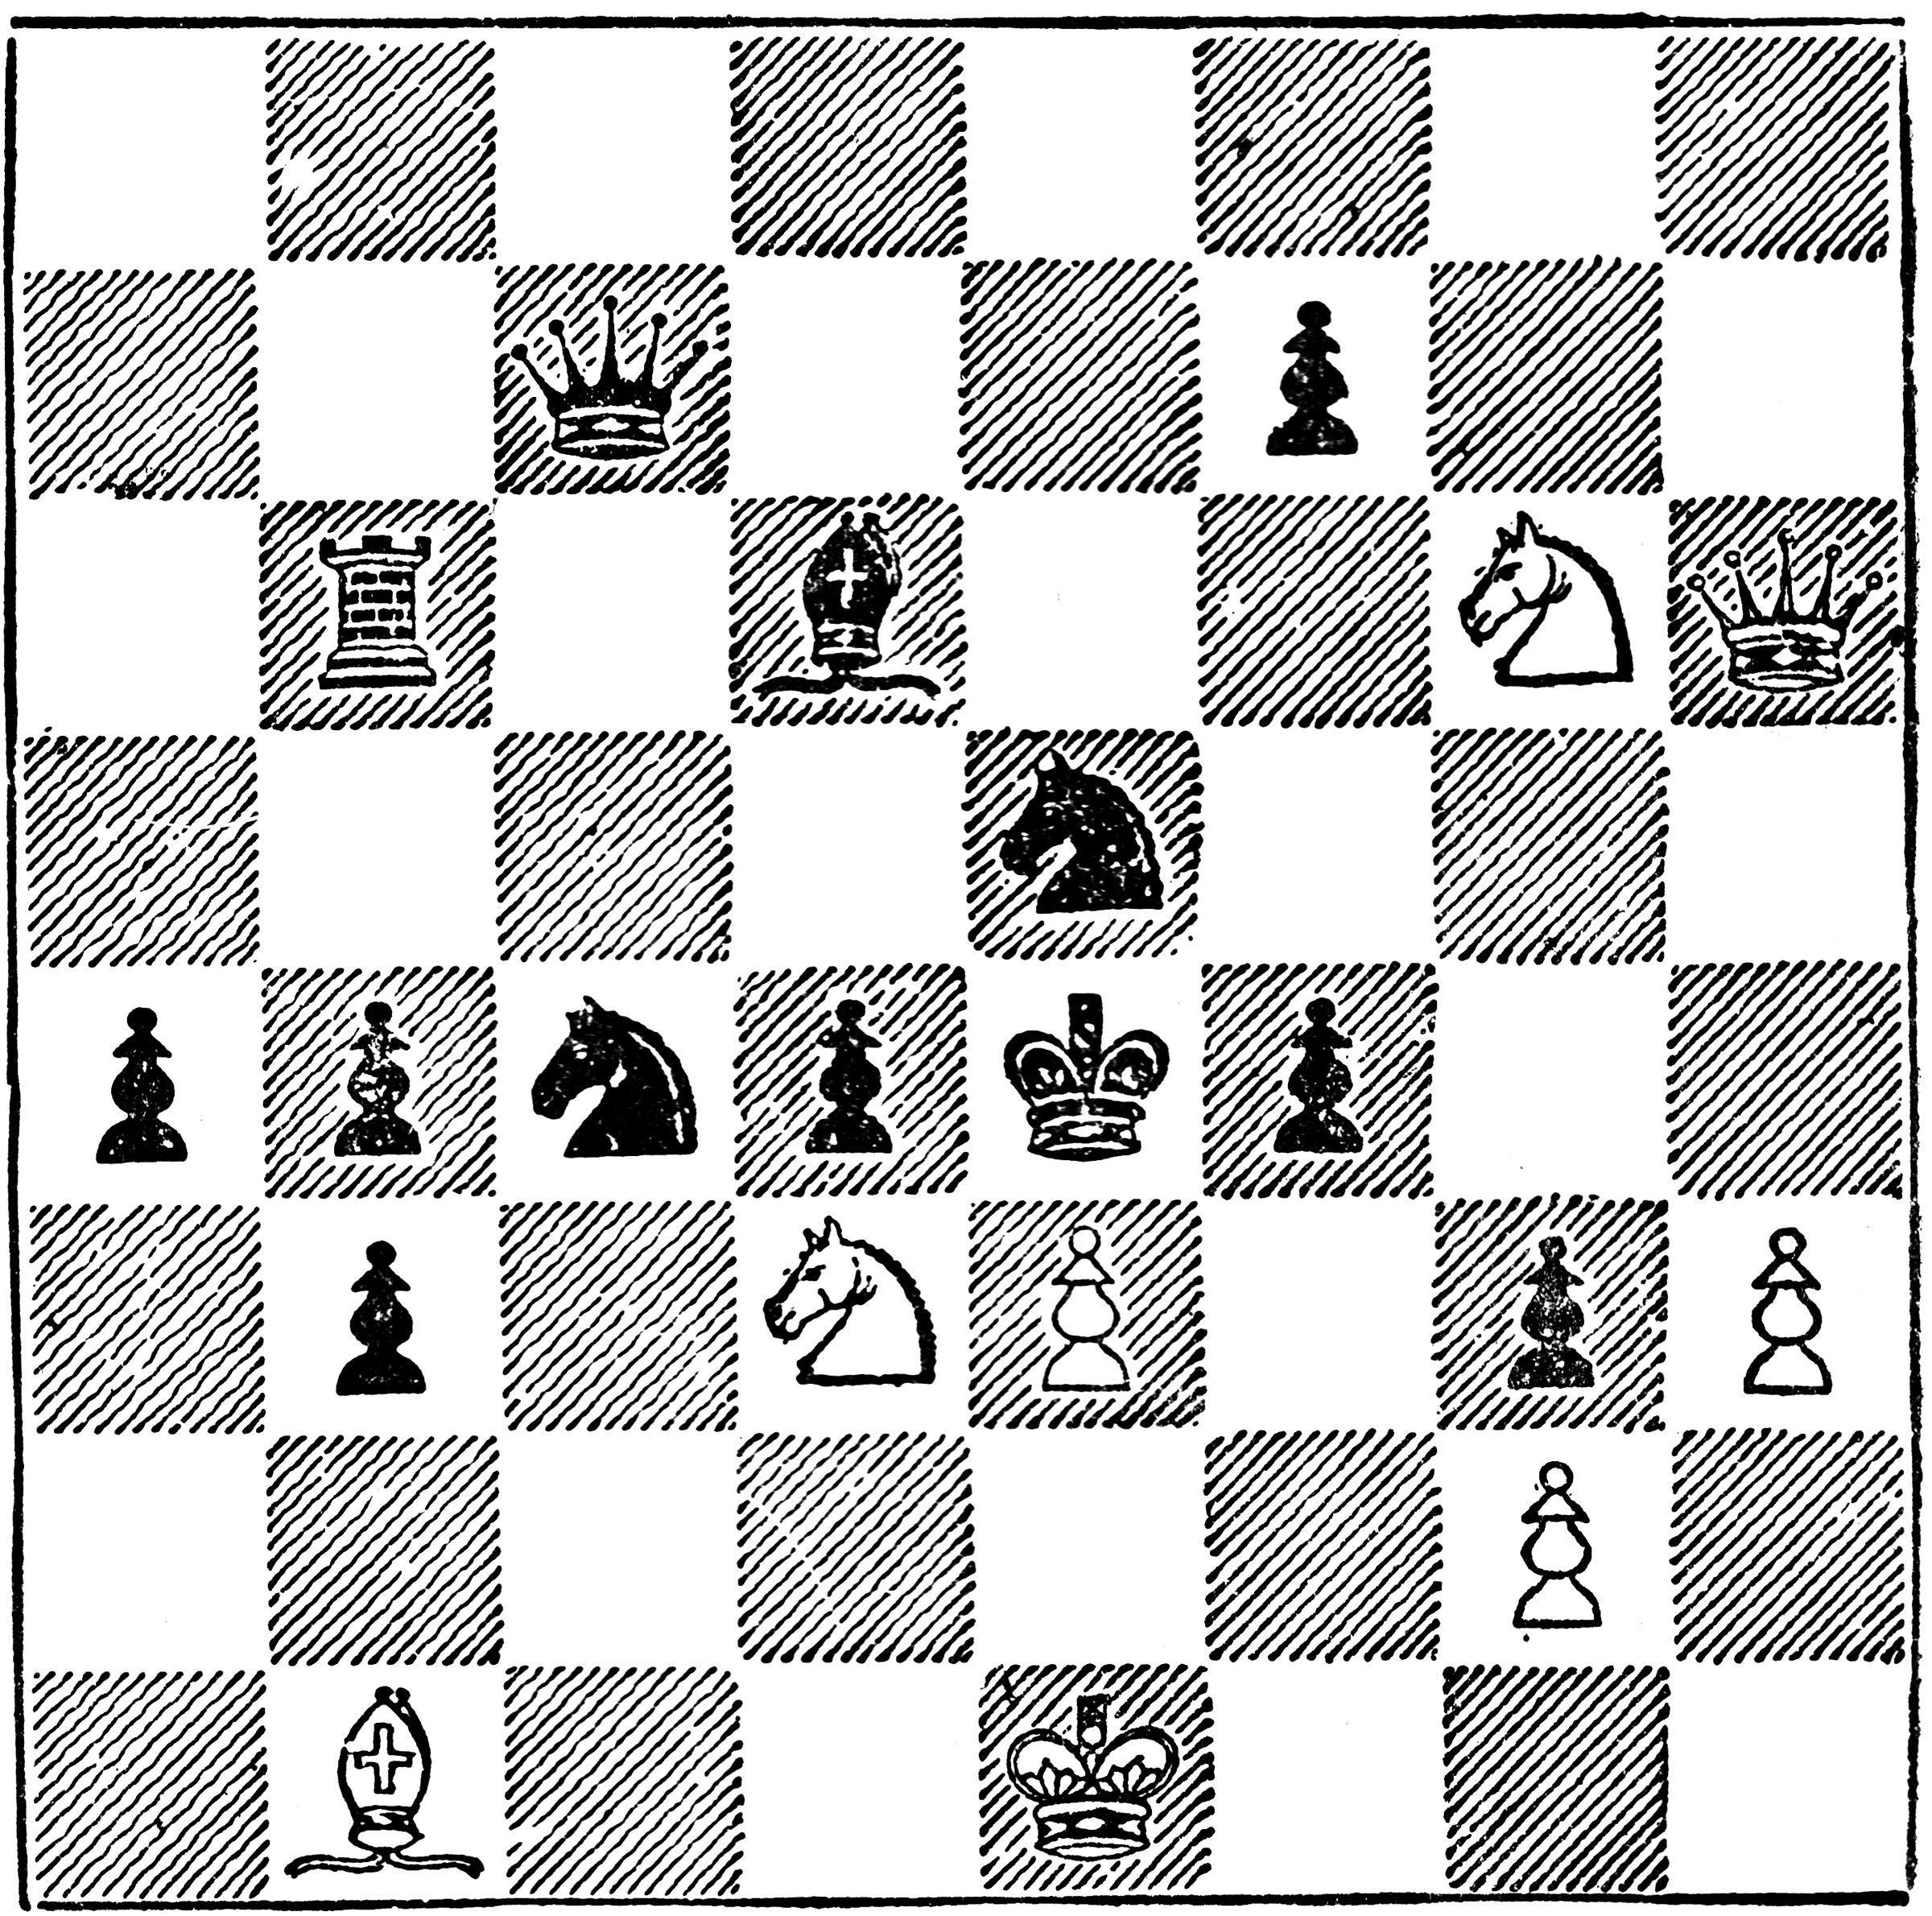 strategy university chess